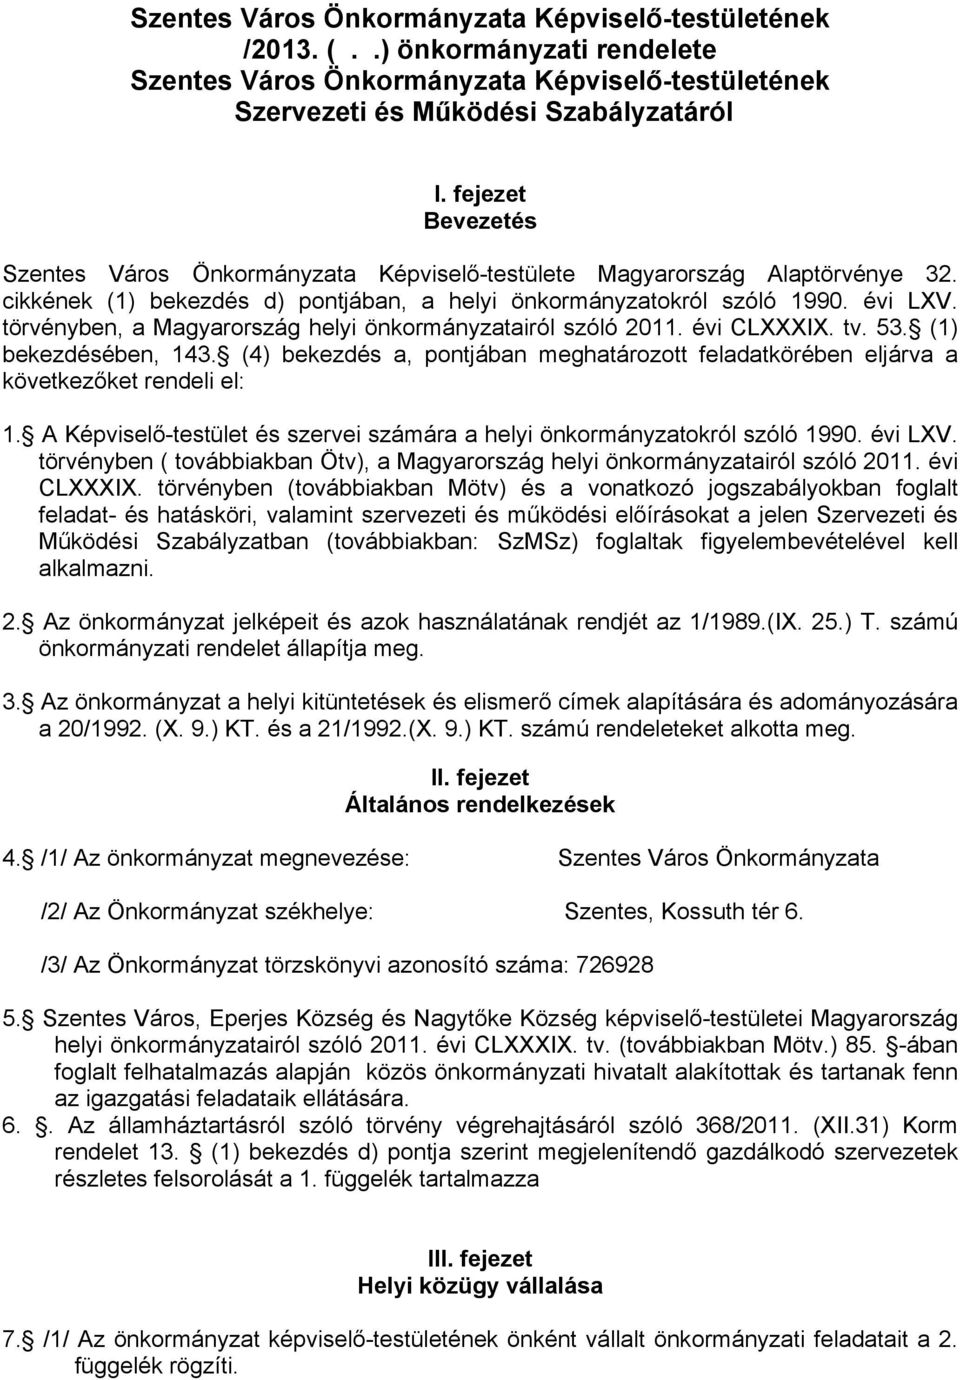 törvényben, a Magyarország helyi önkormányzatairól szóló 2011. évi CLXXXIX. tv. 53. (1) bekezdésében, 143. (4) bekezdés a, pontjában meghatározott feladatkörében eljárva a következőket rendeli el: 1.